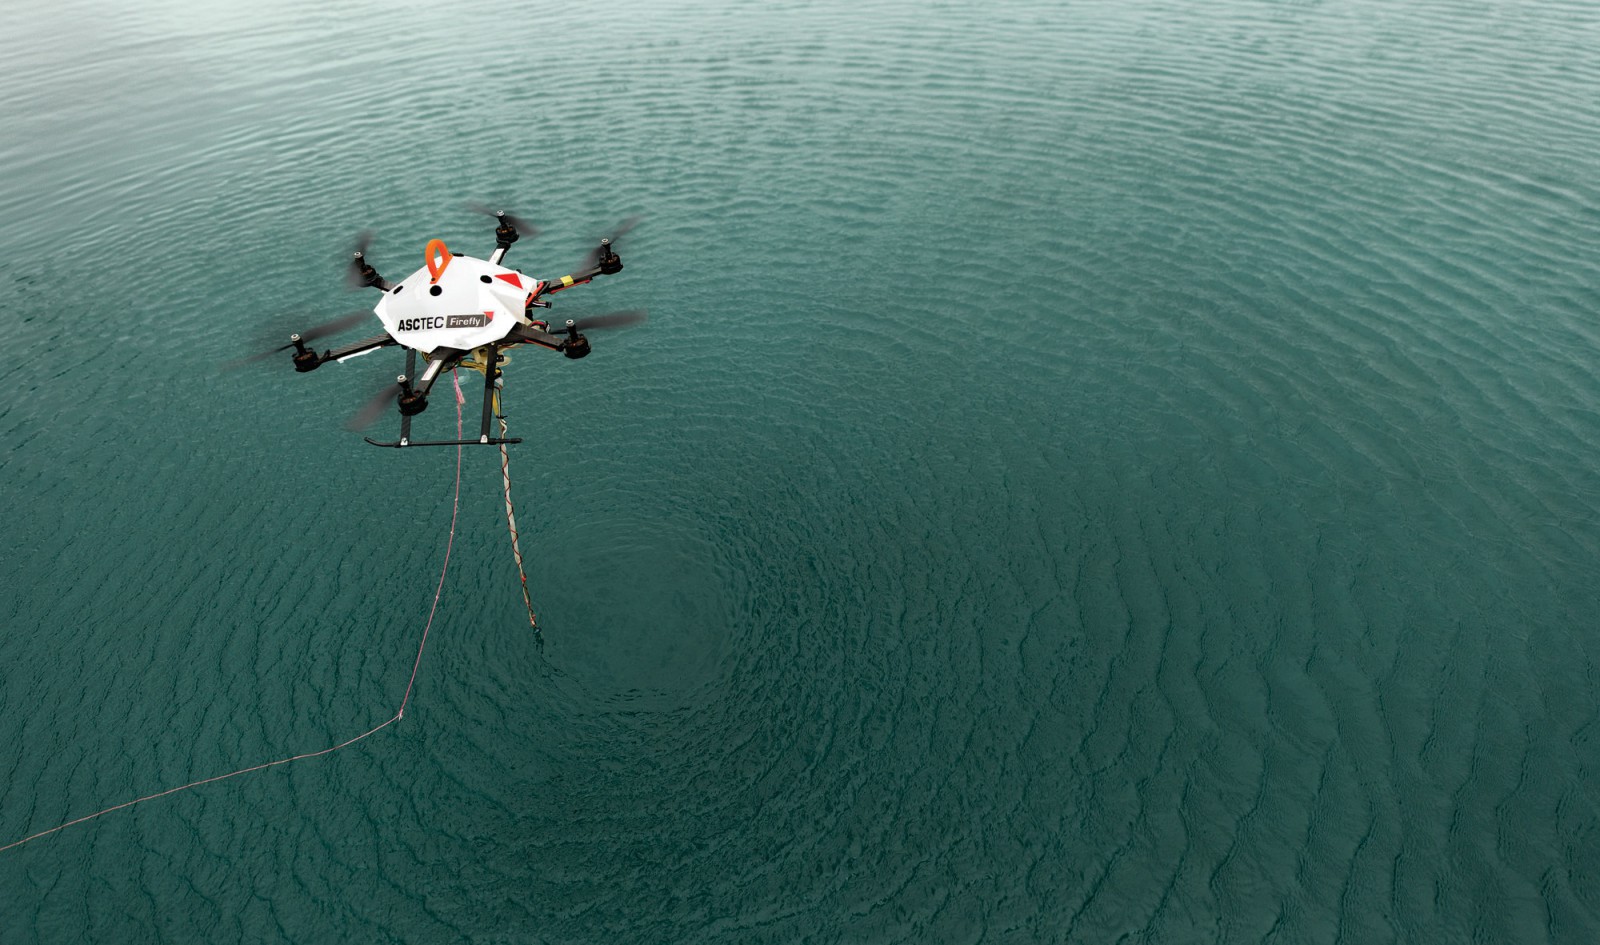 Water-slurping Drones Have Broad Potential